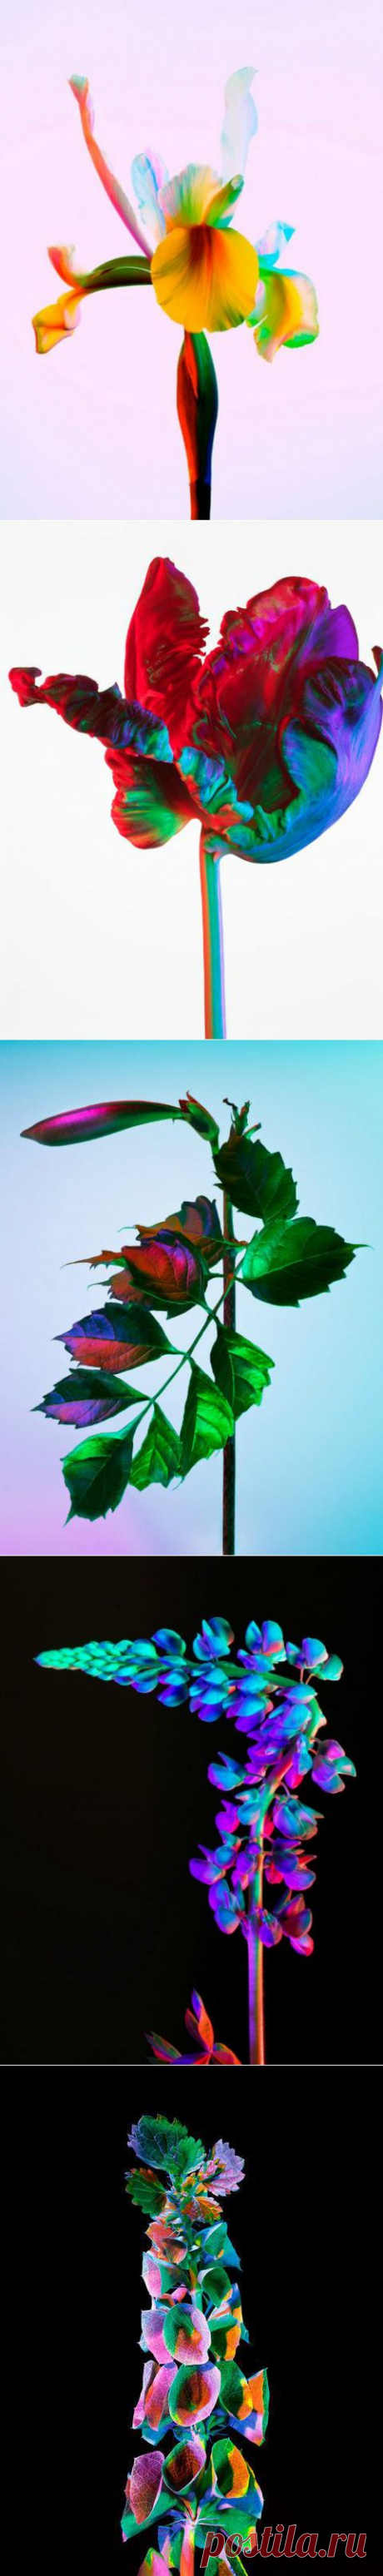 (+1) тема - Завораживающие растения в фотопроекте Торкила Гуднасона «Electric Blossom» |